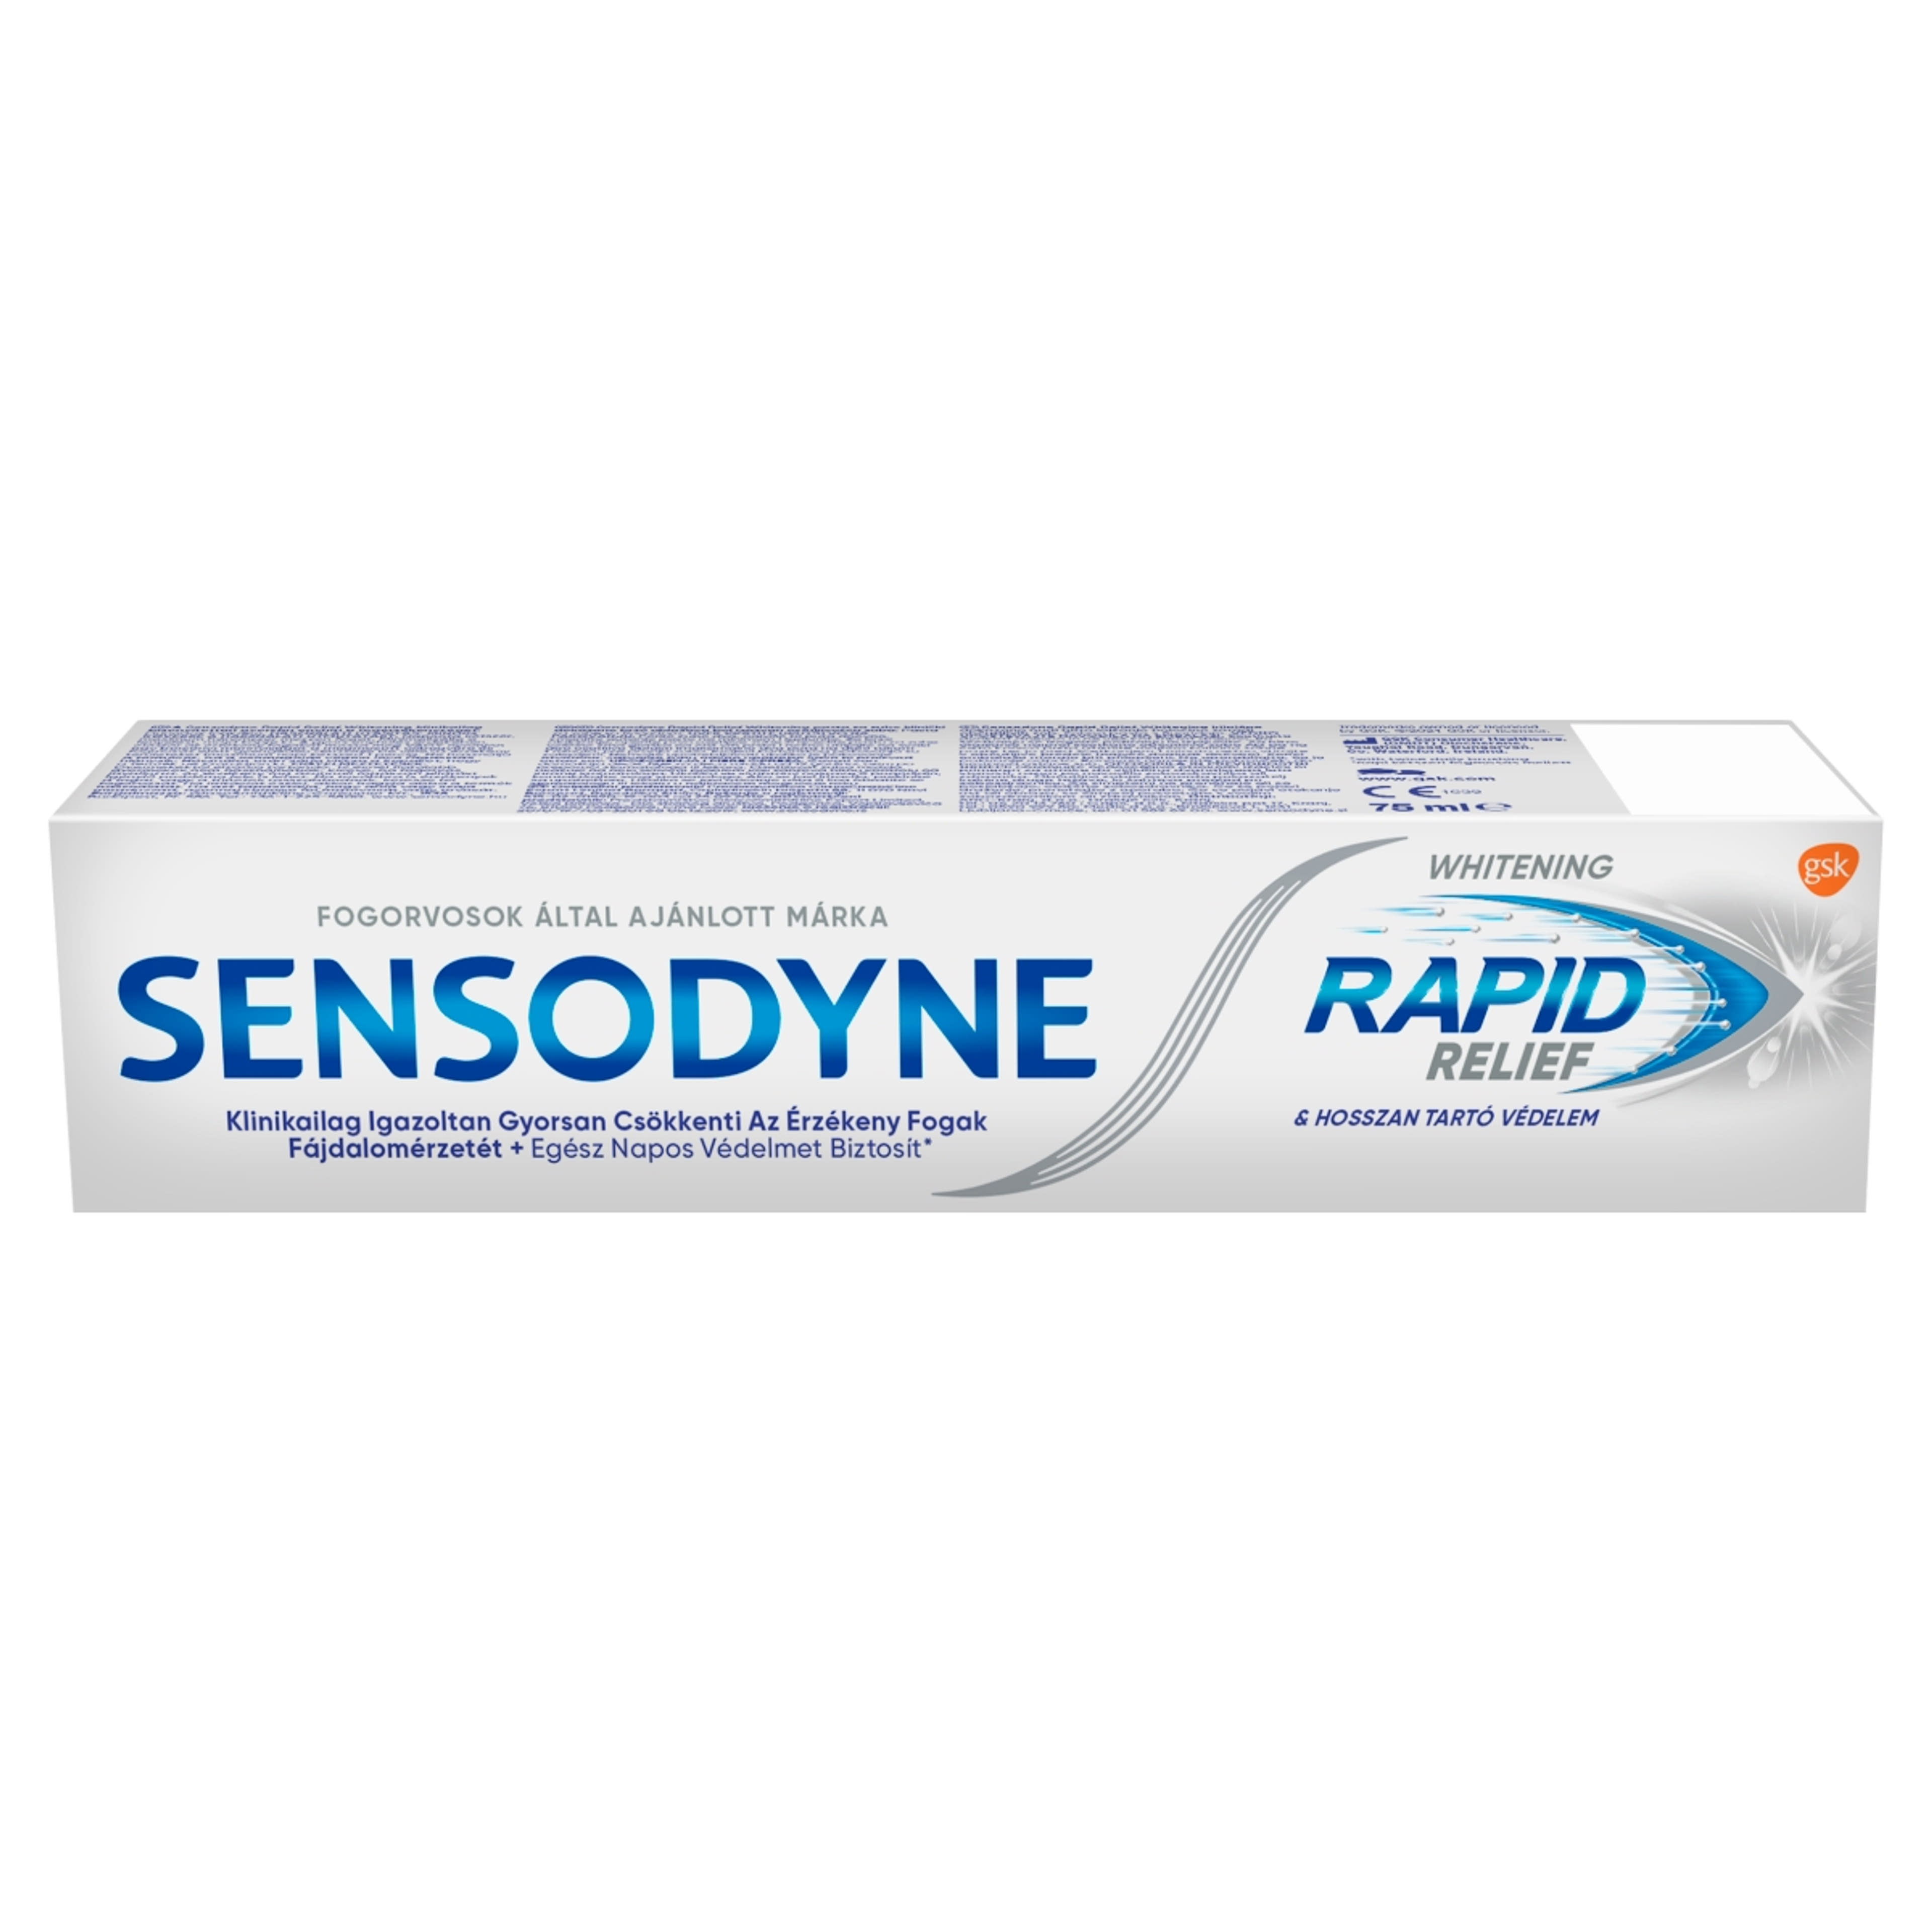 Sensodyne Rapid Whitening fogkrém - 75 ml